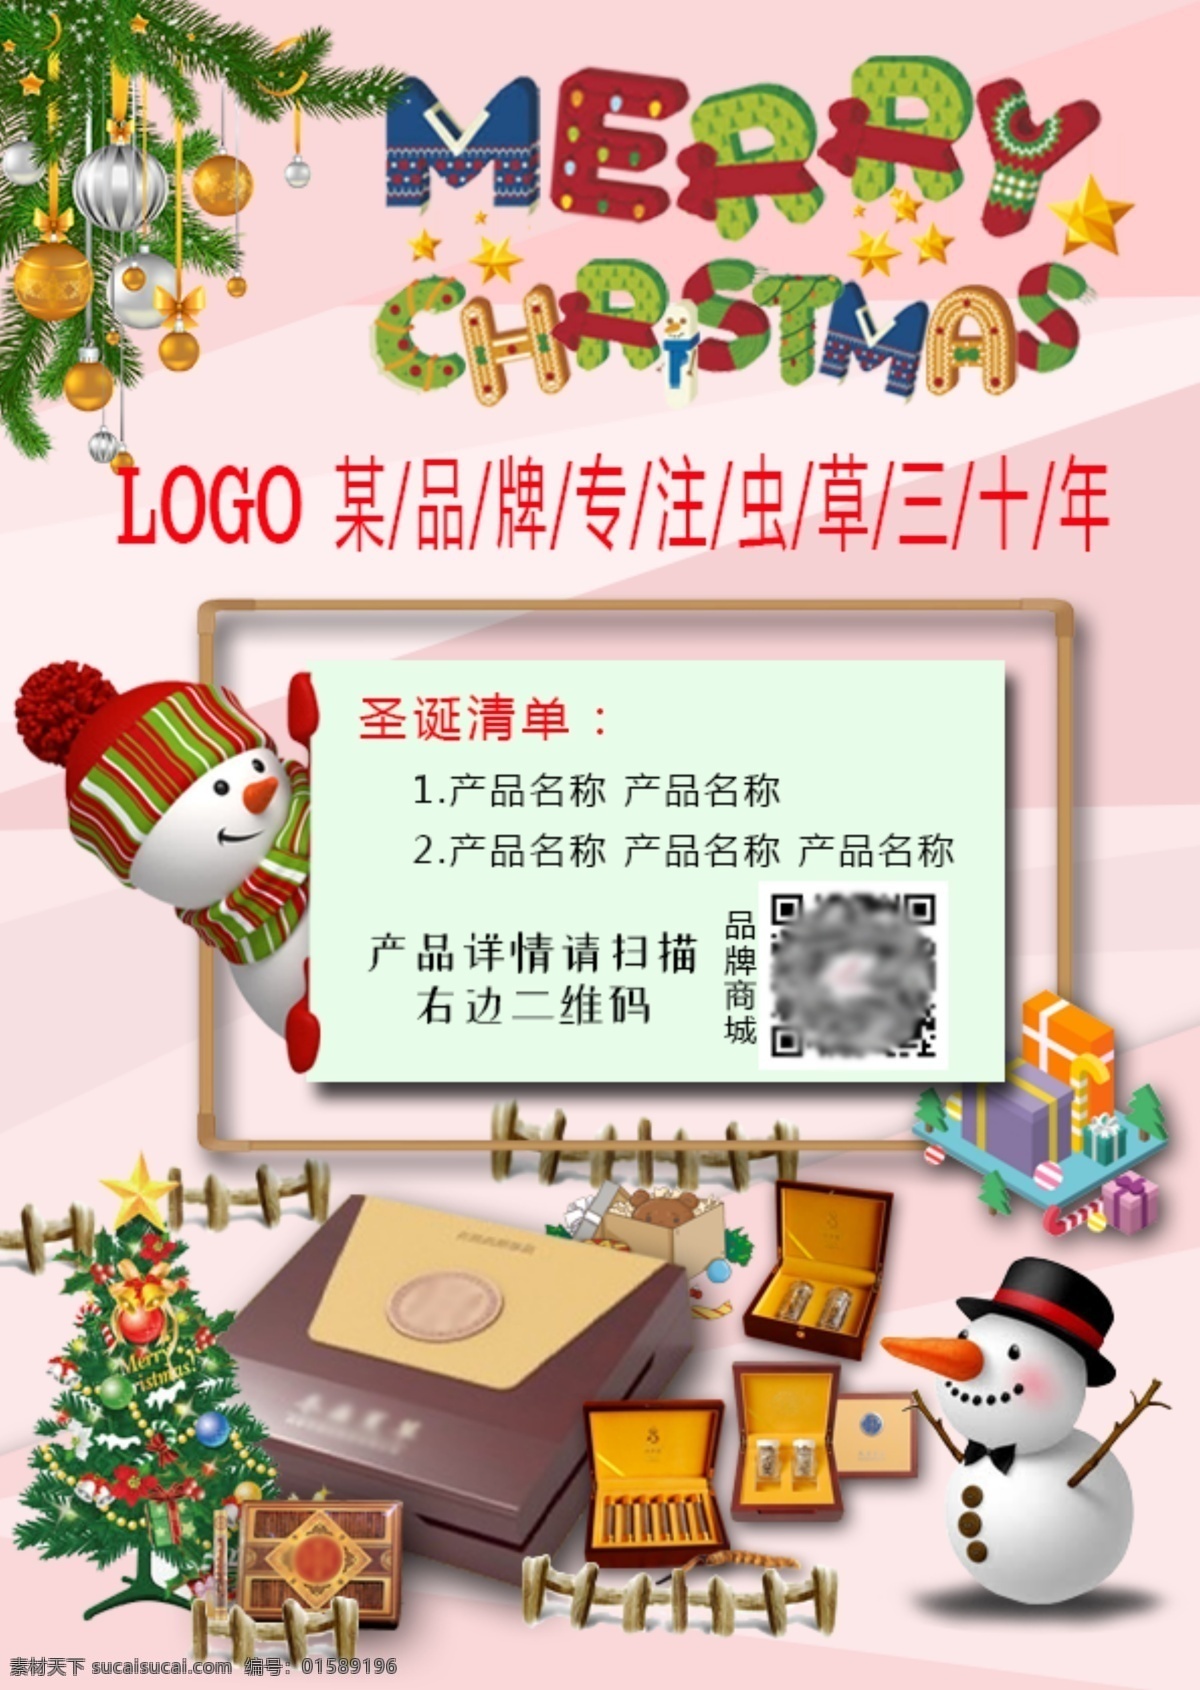 圣诞节 产品 宣传海报 冬虫夏草 雪人 圣诞树 礼物 产品宣传 原文件 可修改 粉色